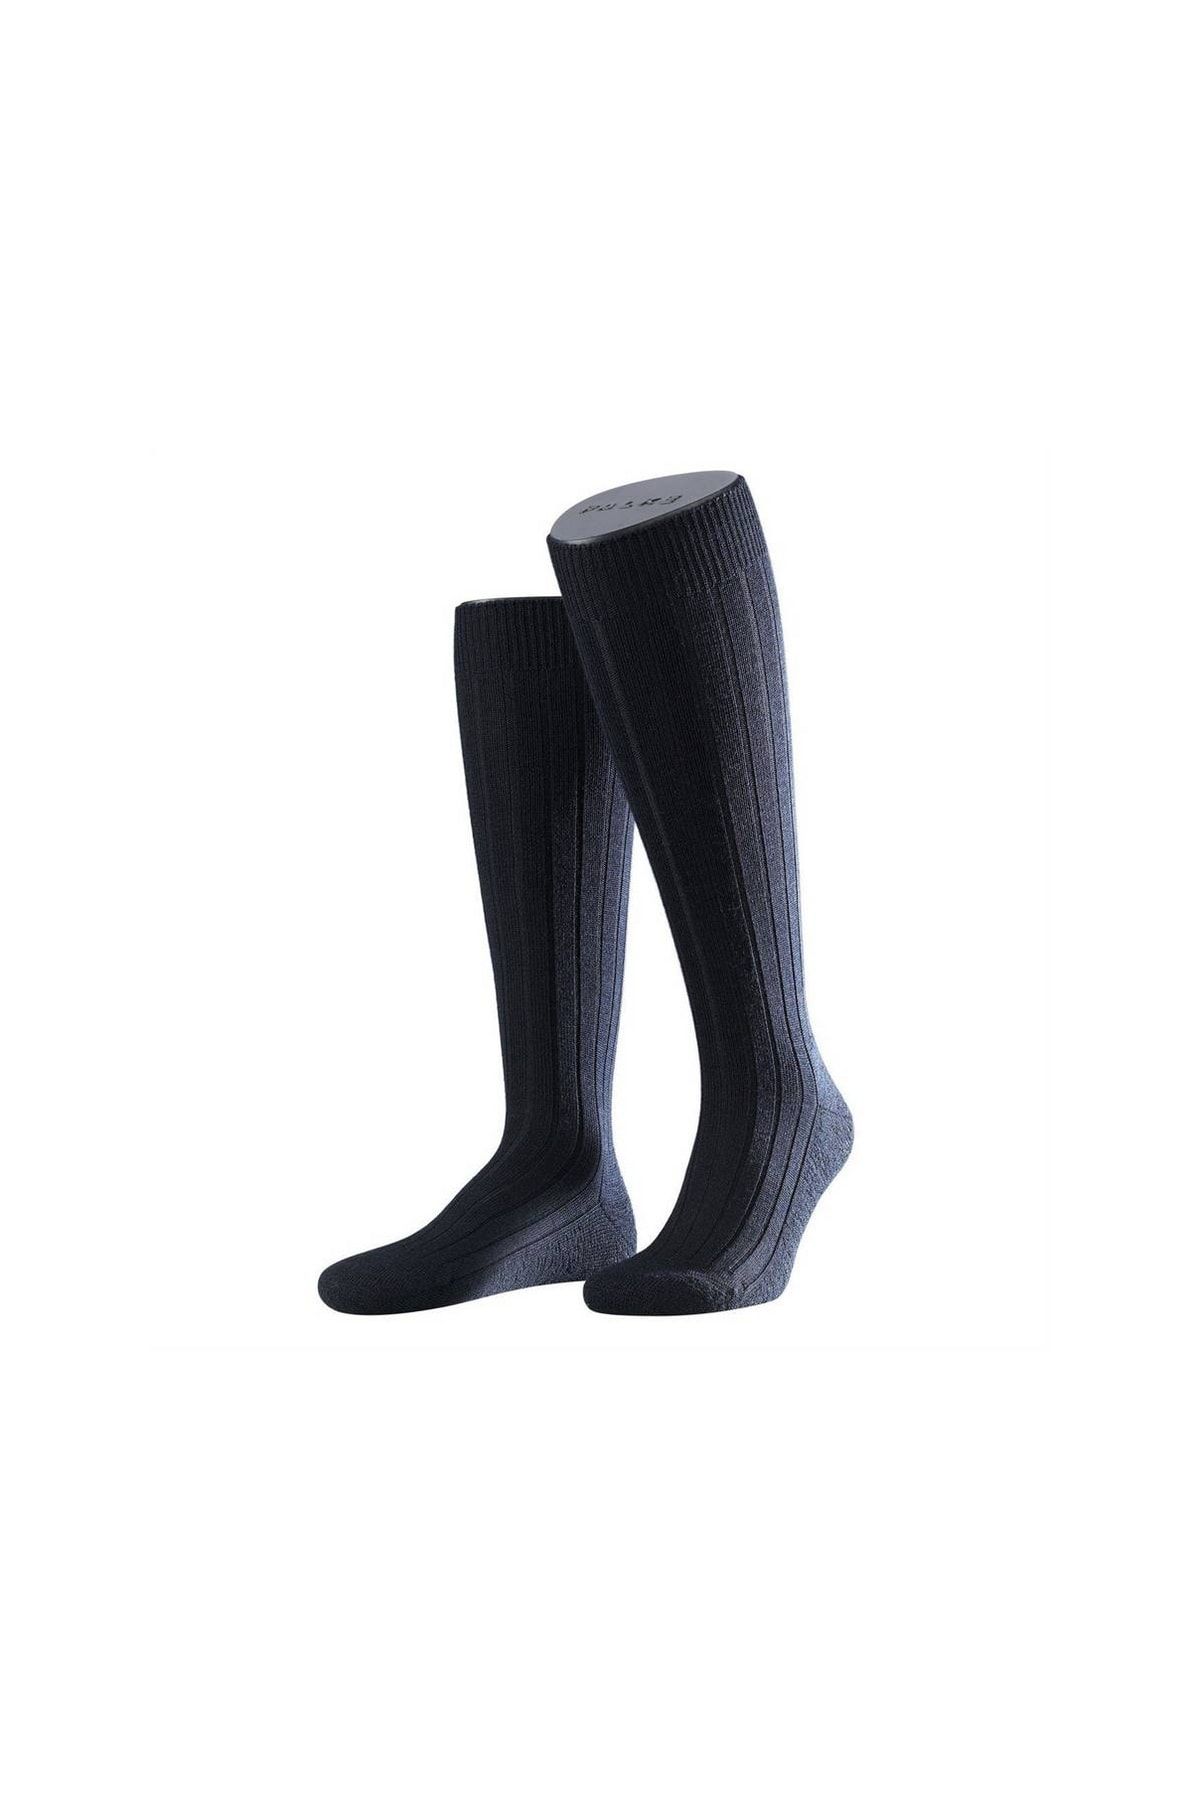 FALKE Socken Blau Strukturiert für Herren - 40-44 Hersteller: Falke Bestellnummer: